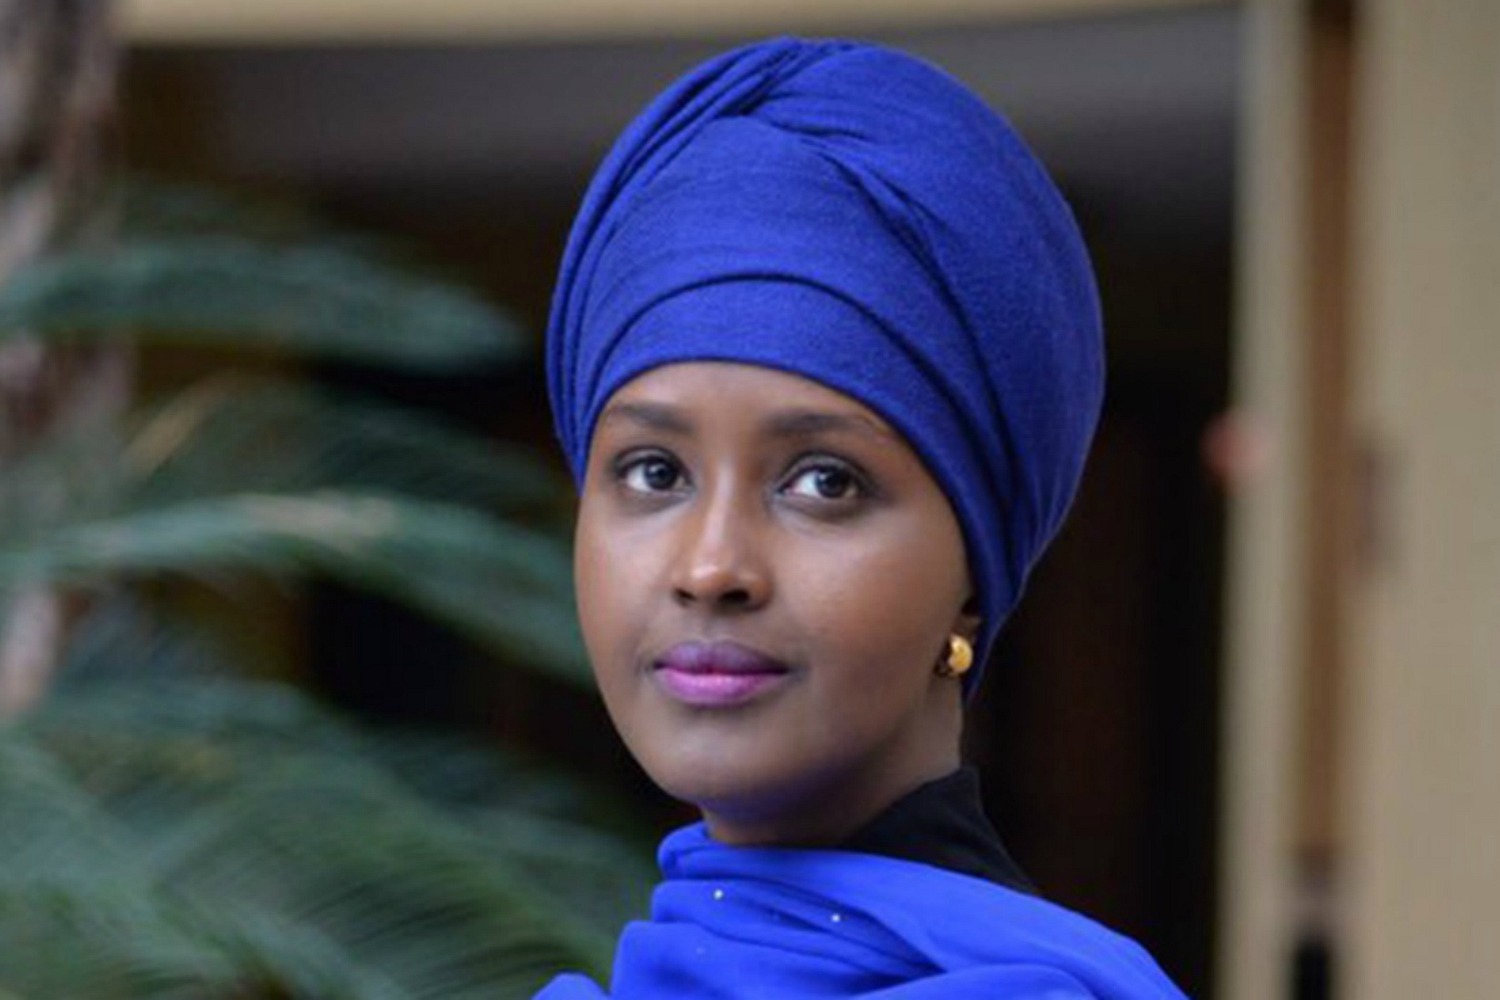 La refugiada que se ha presentado a presidenta de Somalia 26 años después de huir de la guerra